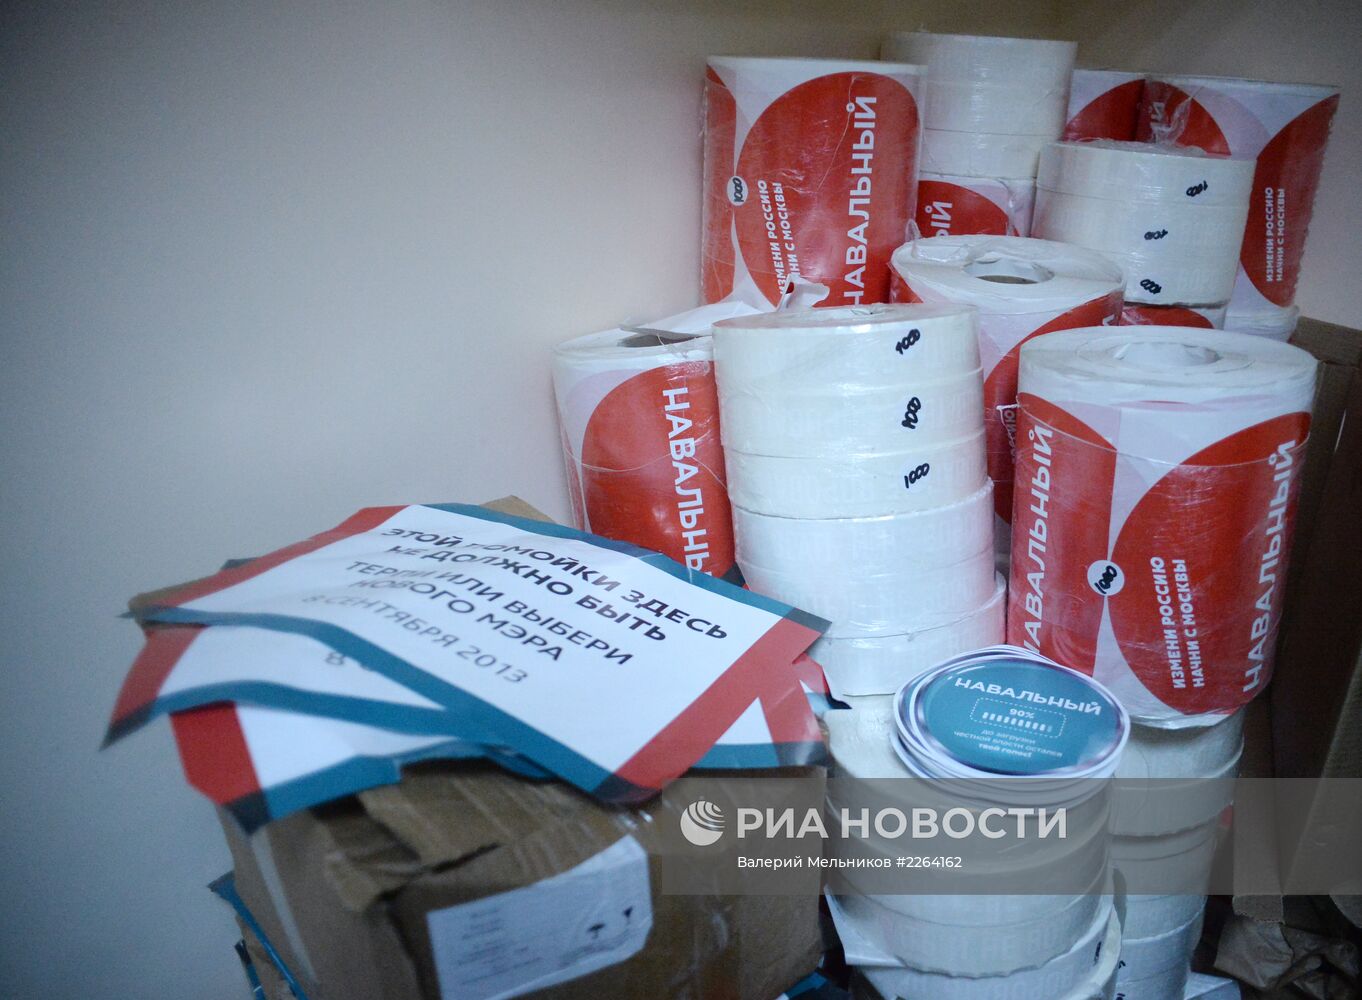 Вес изъятых в центре Москвы агитматериалов превысил 2 тонны